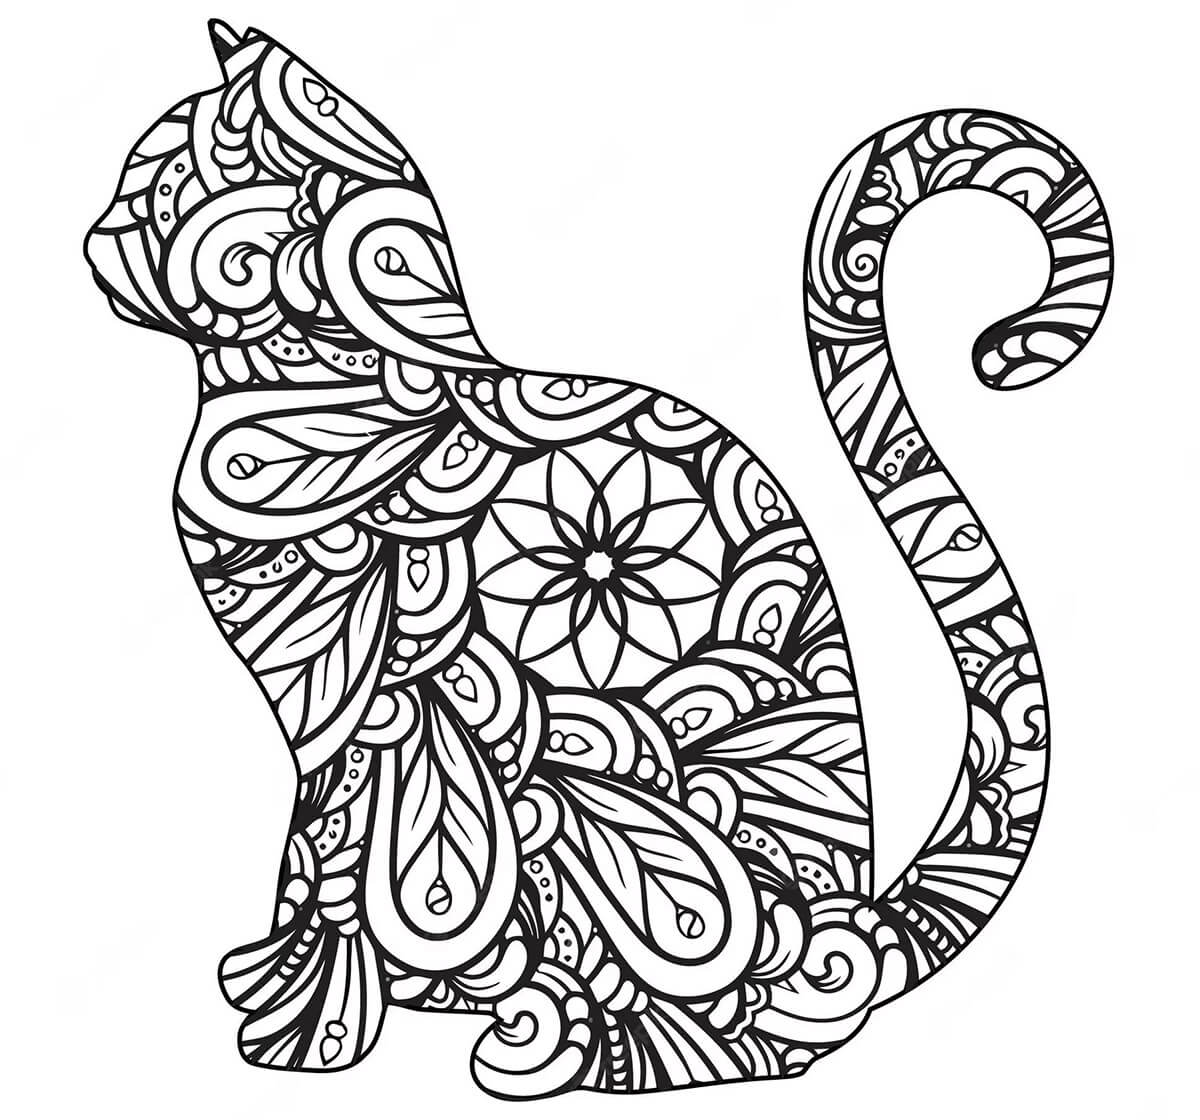 Mandala Cat coloring page - sheet 1 Mandalas